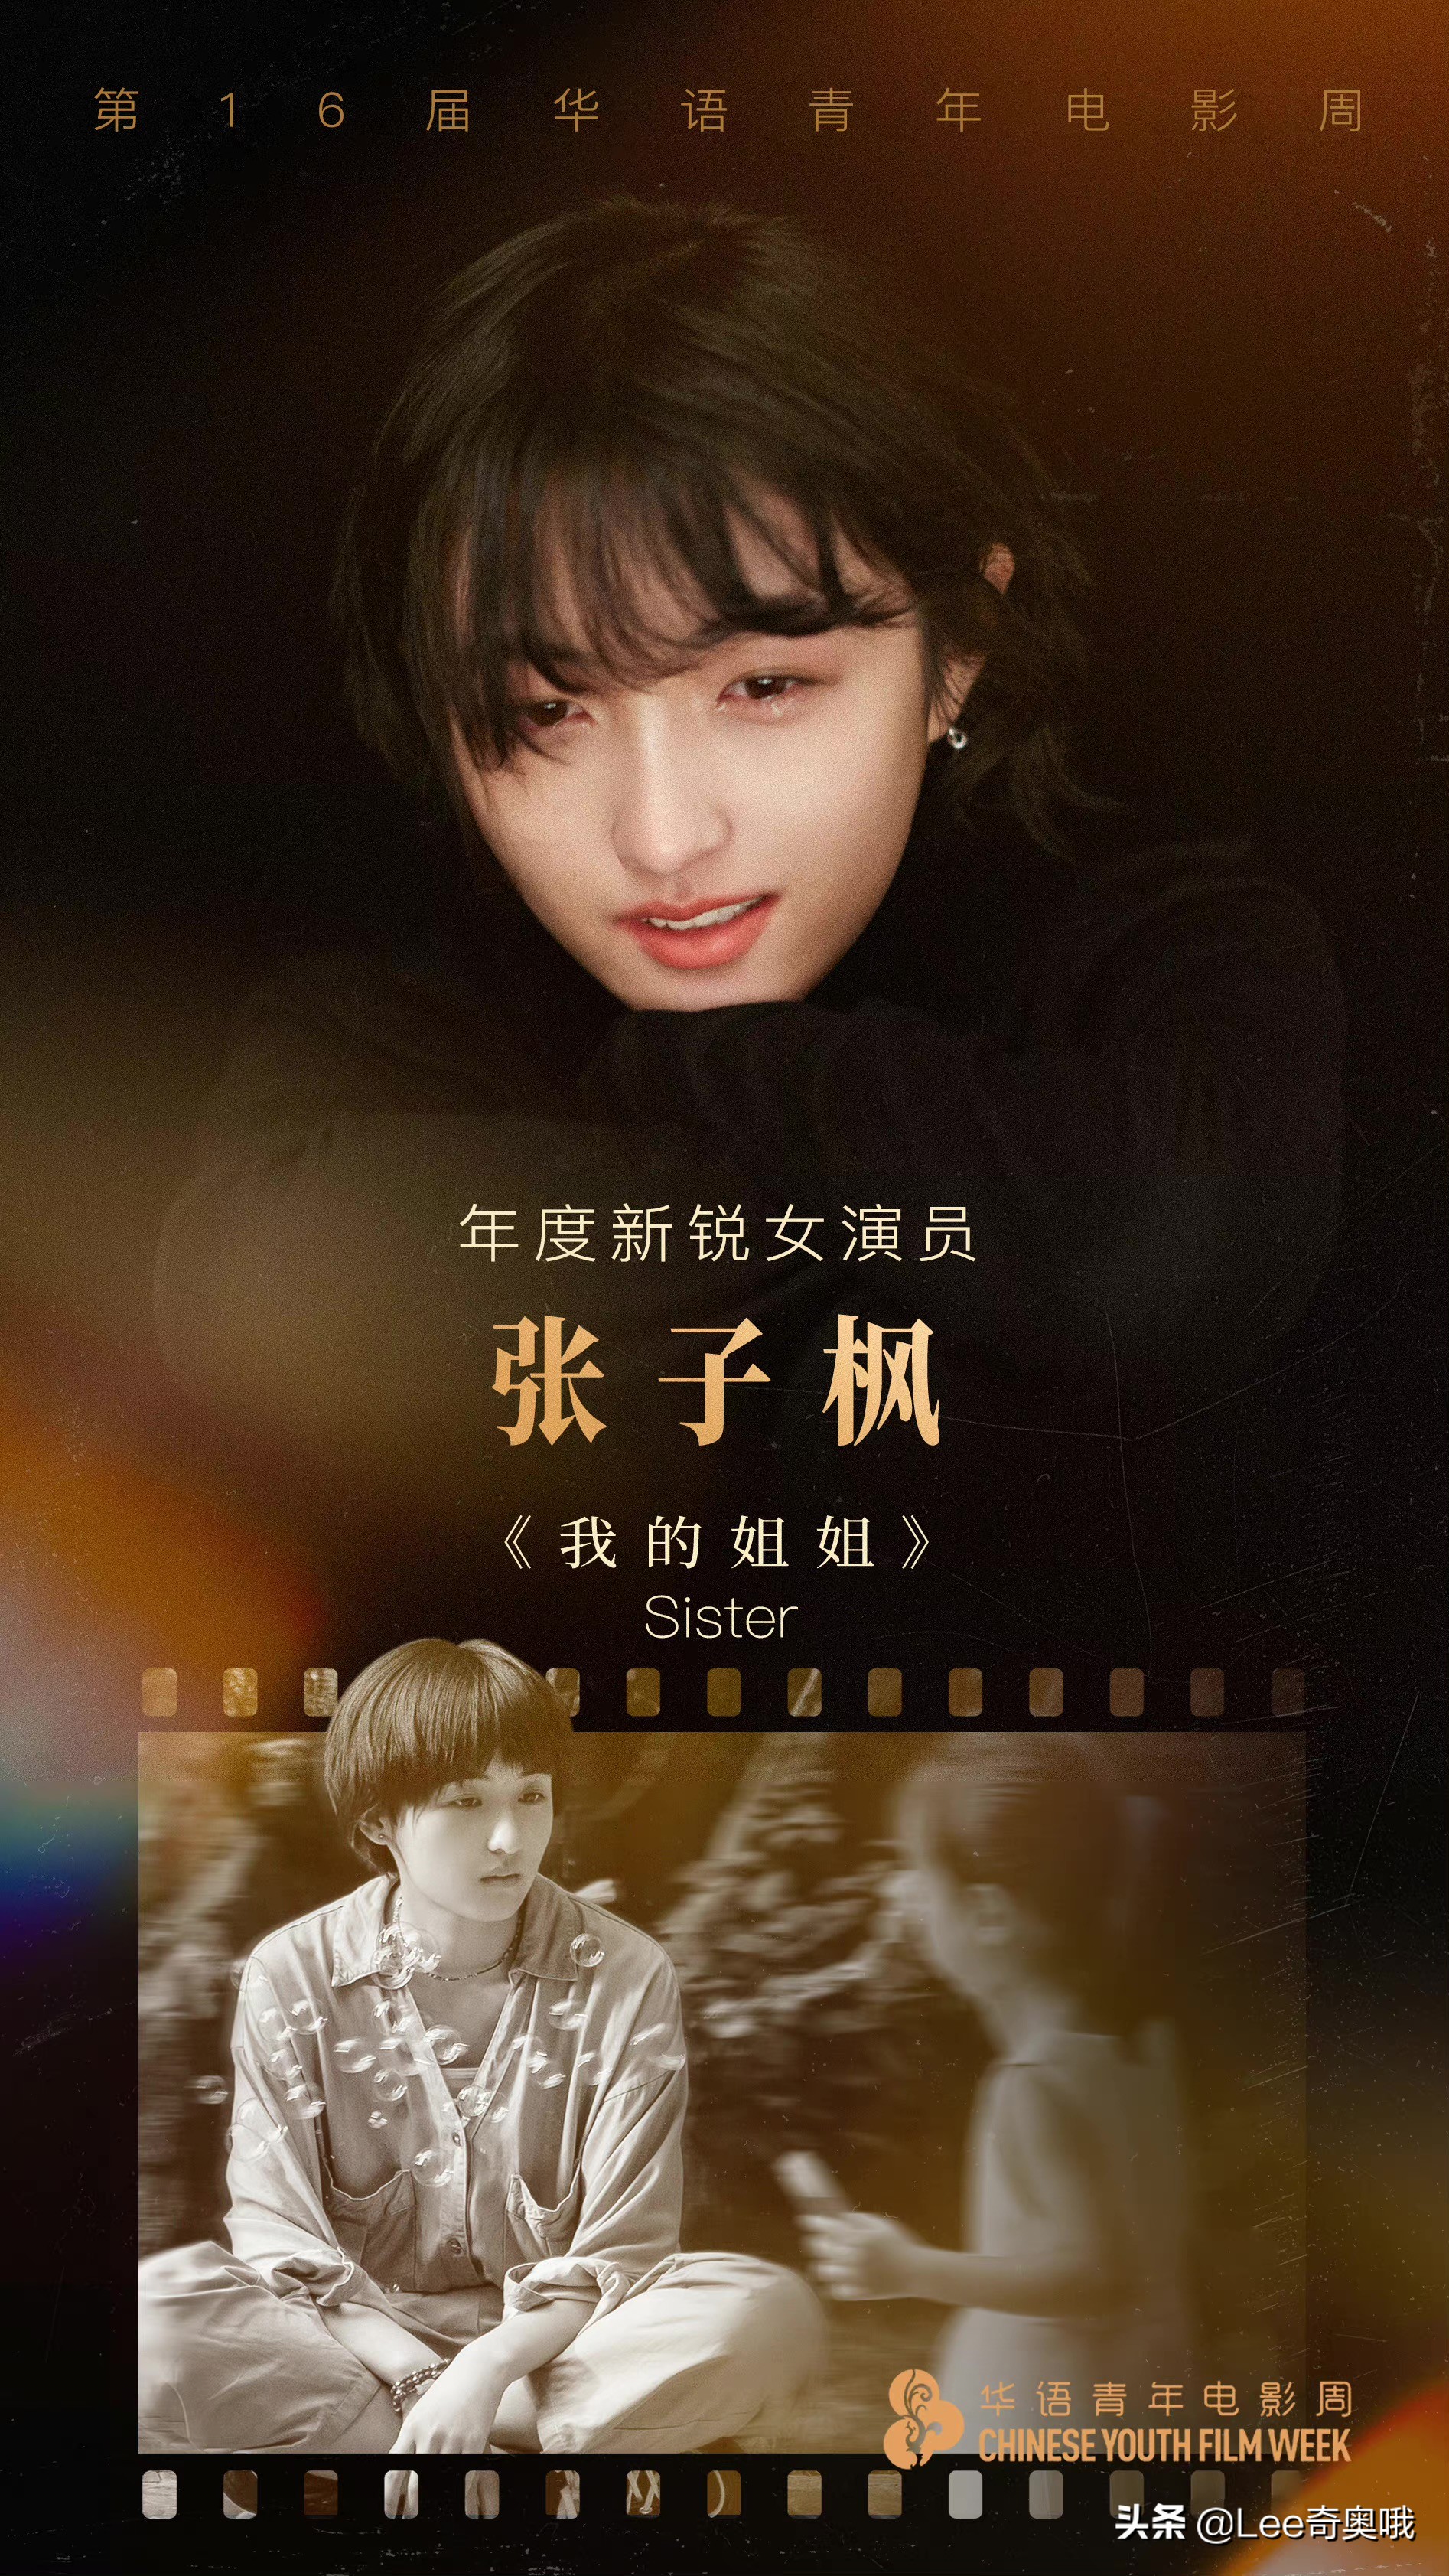 易烊千玺和张子枫获得第16届华语青年电影周“年度新锐演员”奖